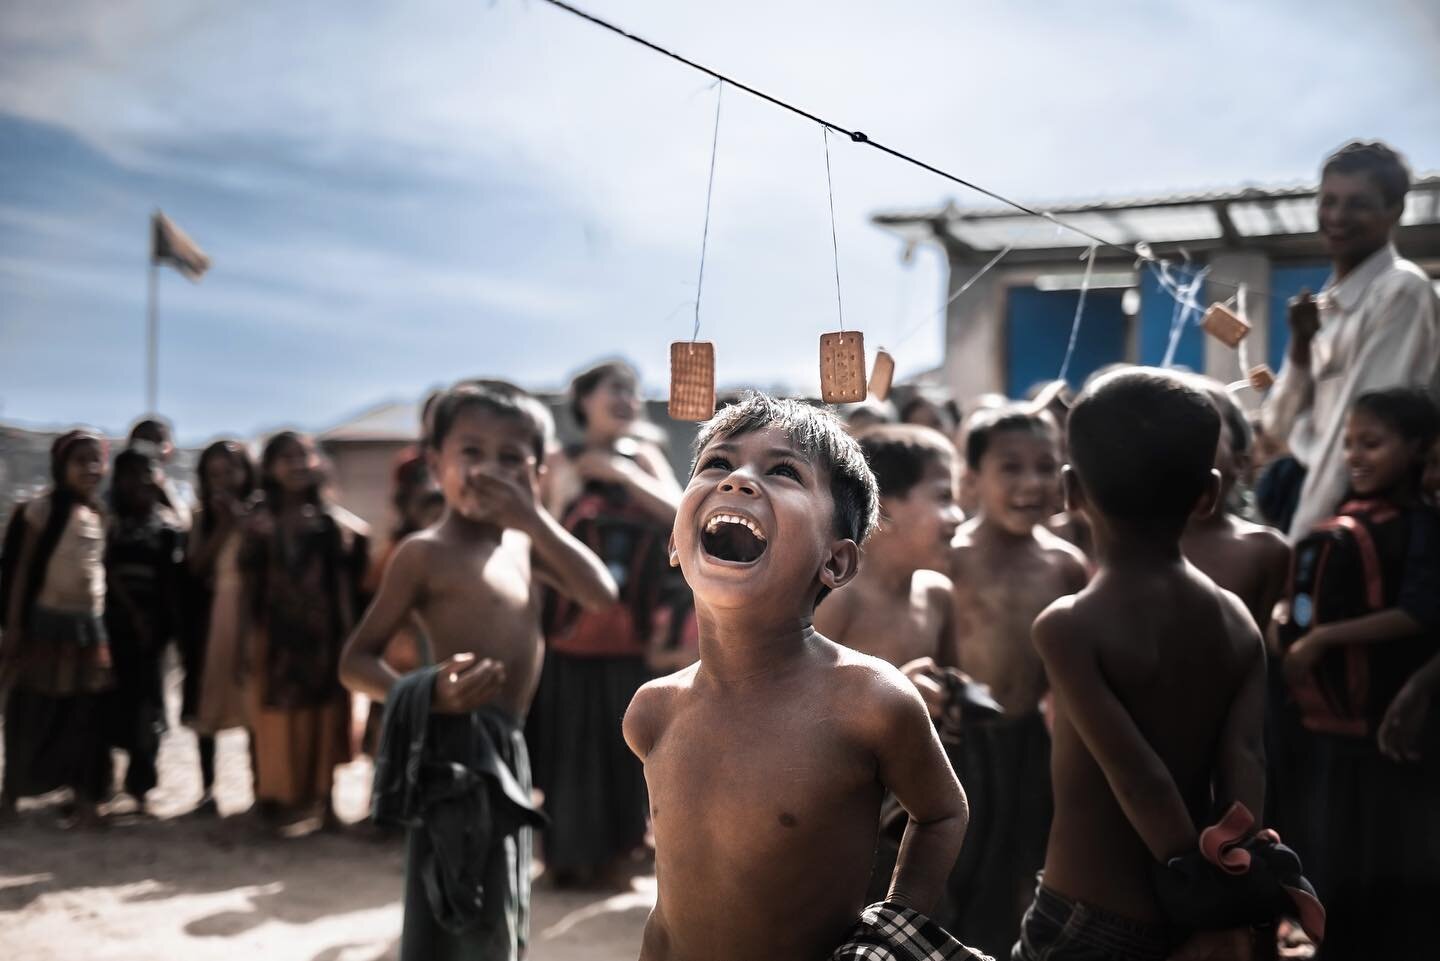 Children were meant to be happy.

Photo by: @nihab_rahman 

#refugees 
#refugeecrisis
#rohingyarefugees
__________________
#humanitarianaid  #refugeecamp  #humaninterest
#balukhalicamp #wewelcomerefugees #kutupalongcamp #documentaryphotography  #unhc